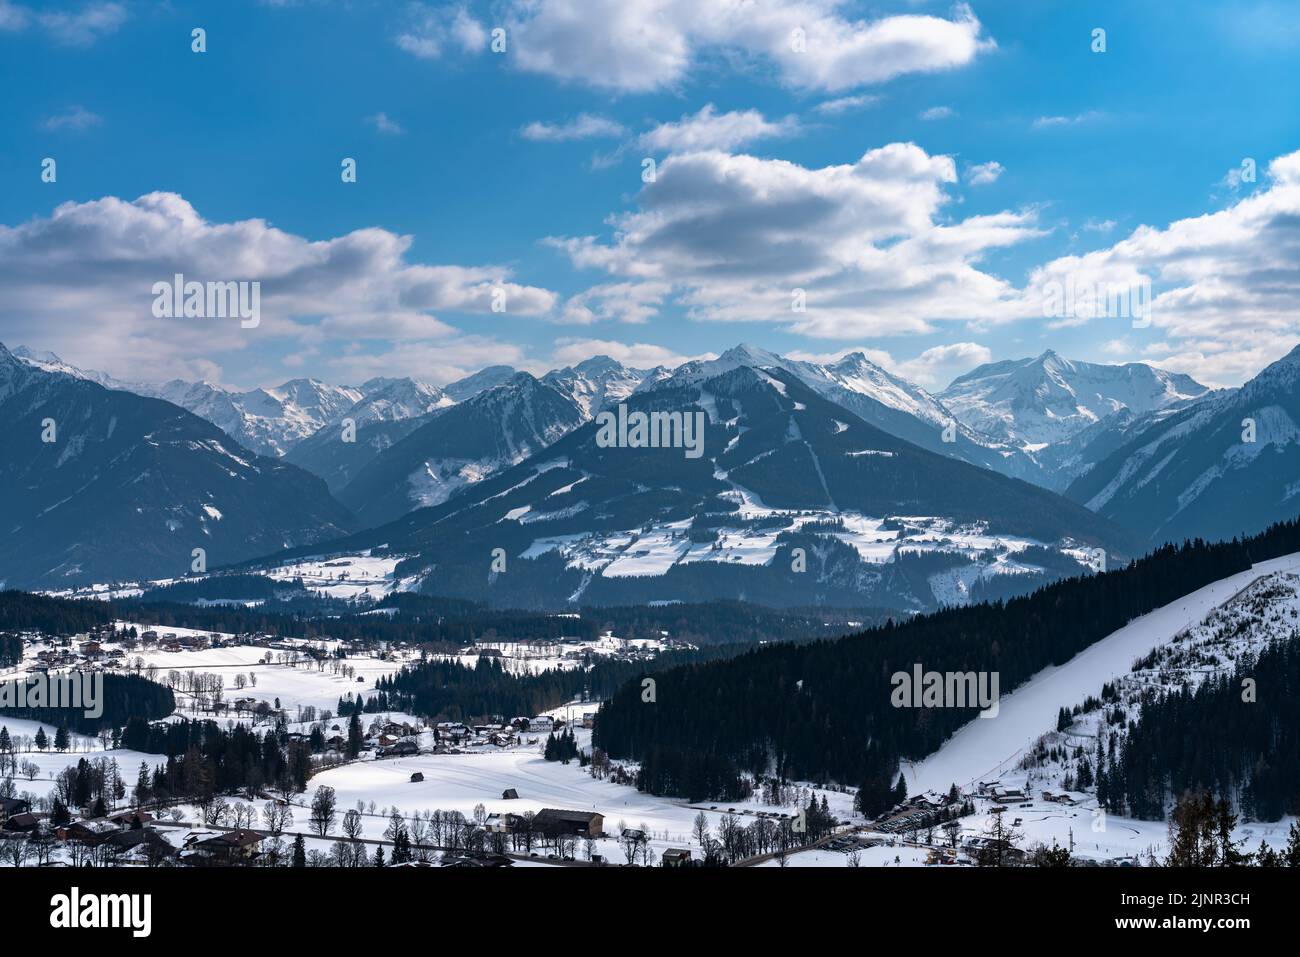 Schöne Luftpanoramabsicht von Ramsau am Dachstein Dorf und Schladming mit Planai und anderen Gipfeln der Alpen im Hintergrund mit blauer Himmelswolke in Stockfoto